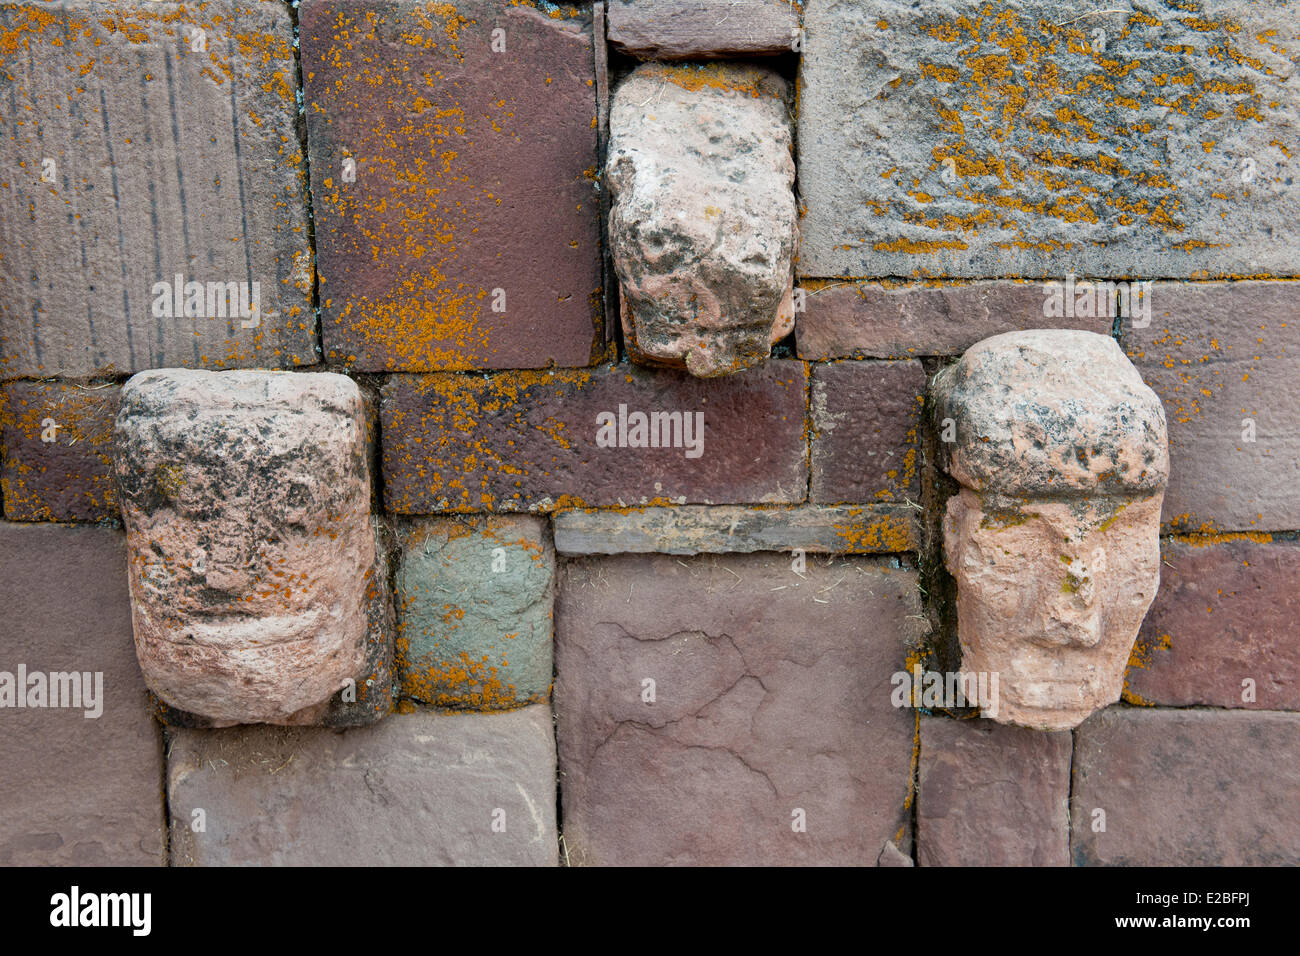 Bolivien, La Paz Abteilung, Tiwanaku präInkaischen archäologische Stätte, Weltkulturerbe der UNESCO, geschnitzten Stein Kopf eingebettet in eine der Wände der Tiwanaku halb unterirdischen Tempel Stockfoto